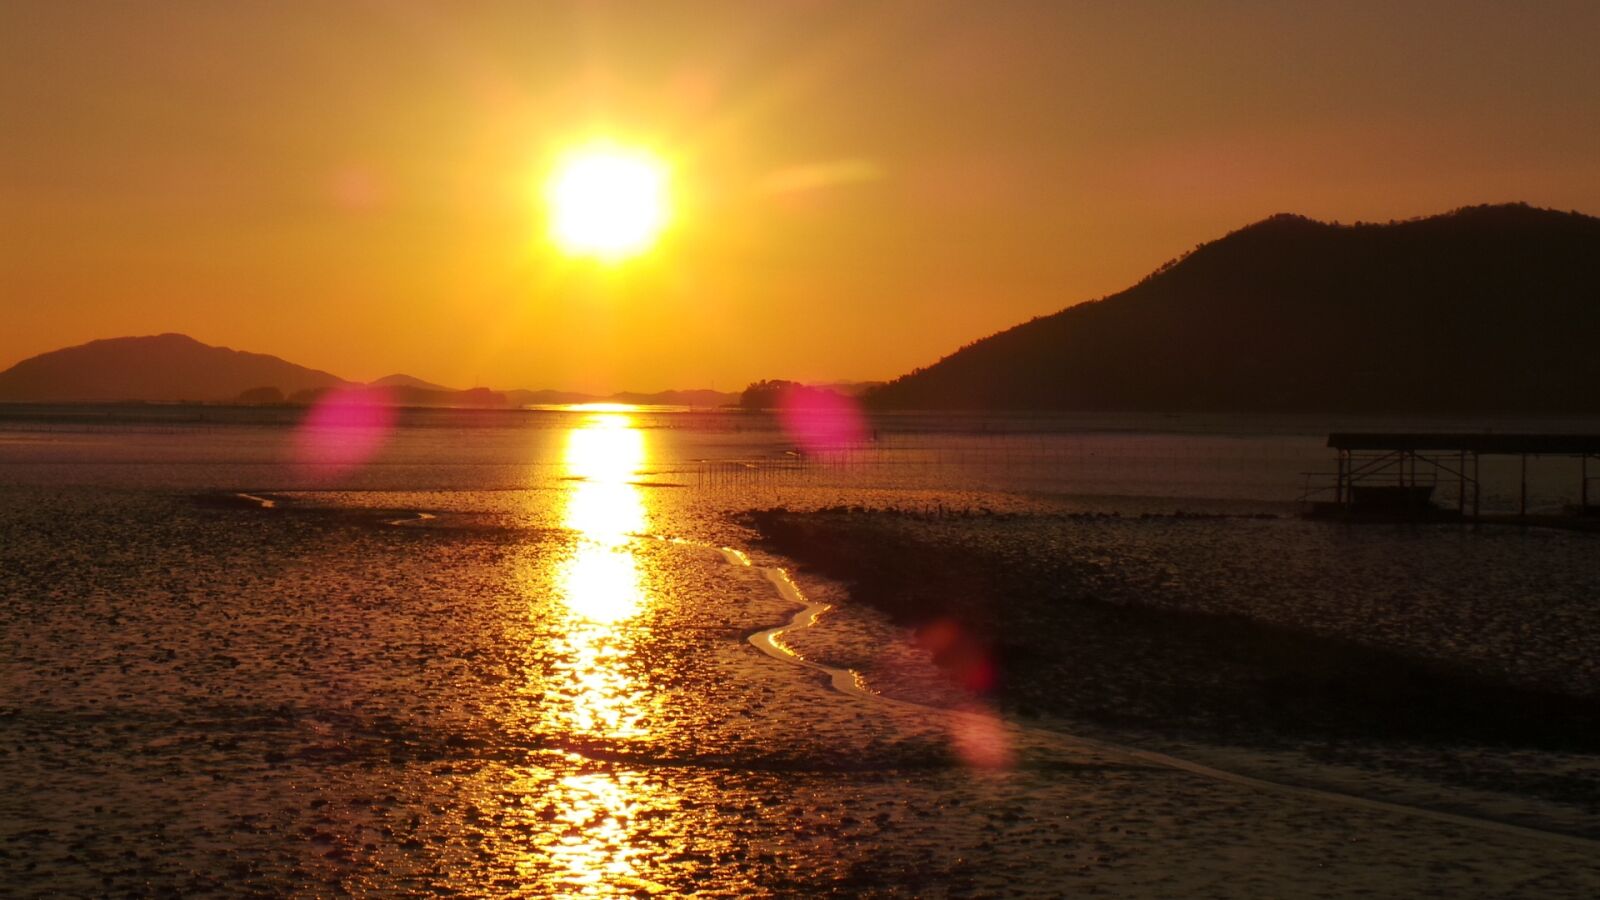 Samsung Galaxy Camera (Wi-Fi) sample photo. Sunset, suncheon bay, tidal photography